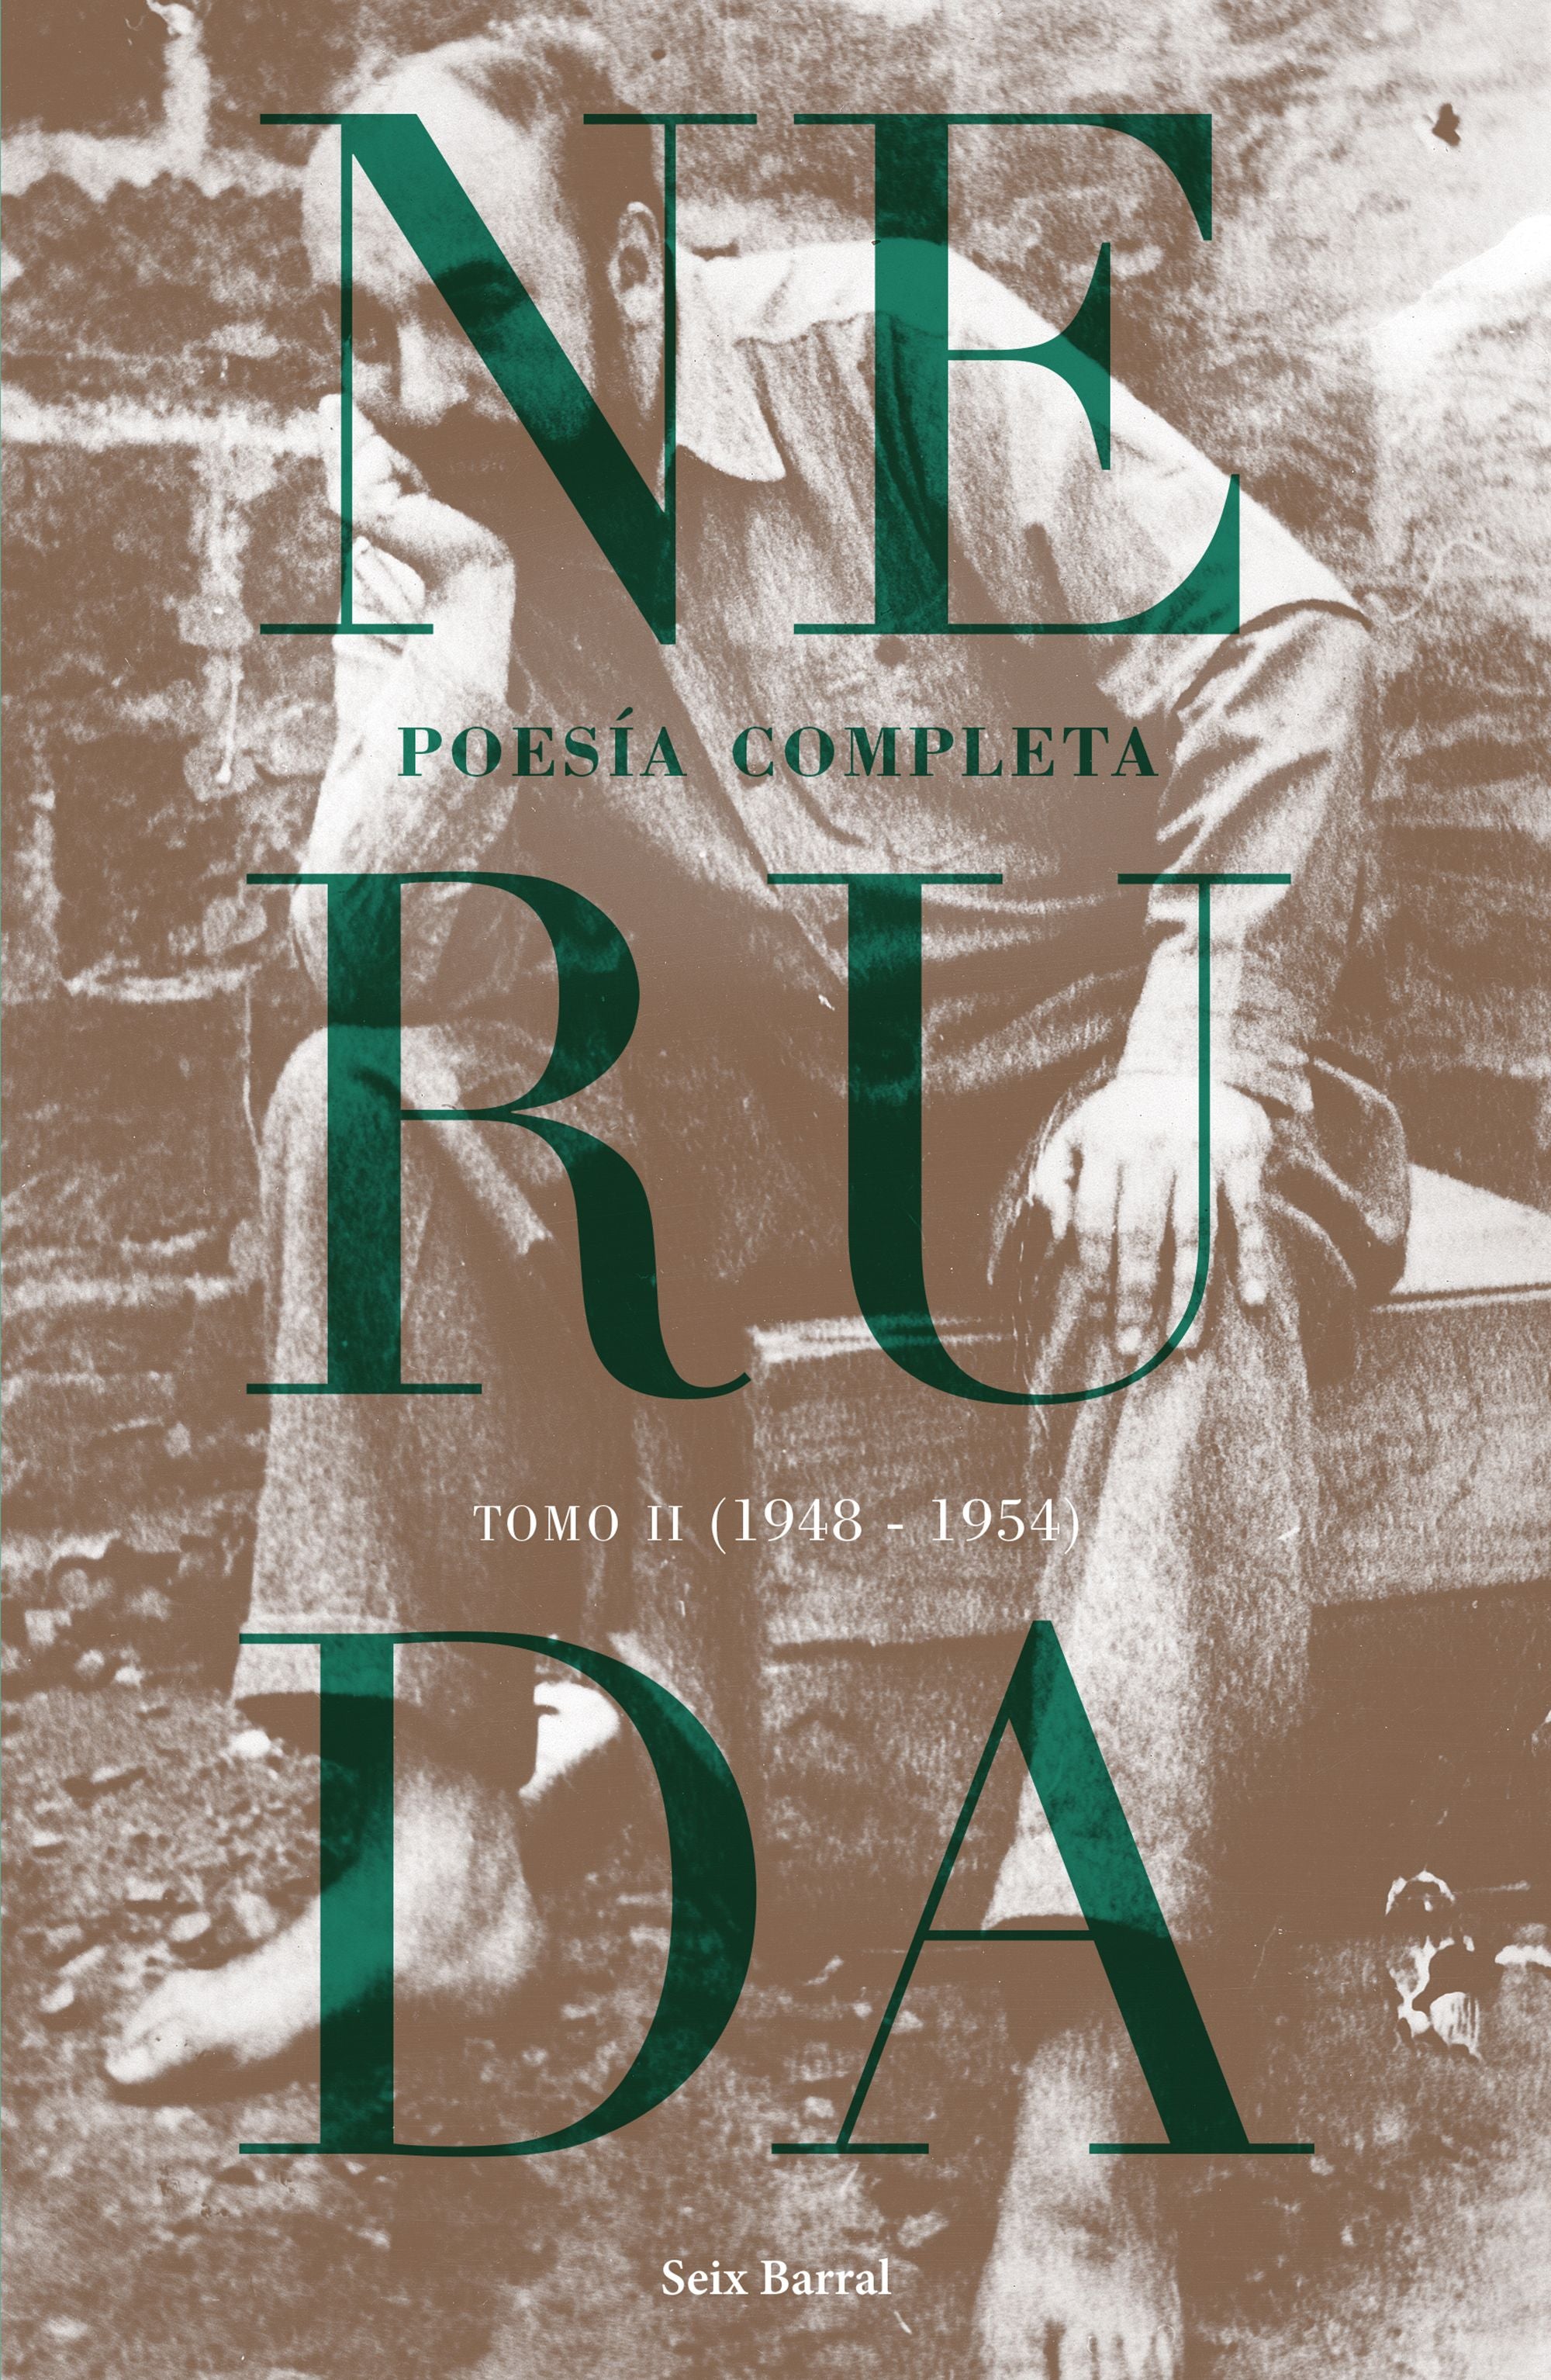 Libro Pablo Neruda - Poesía completa. Tomo 2 (1948-1954)